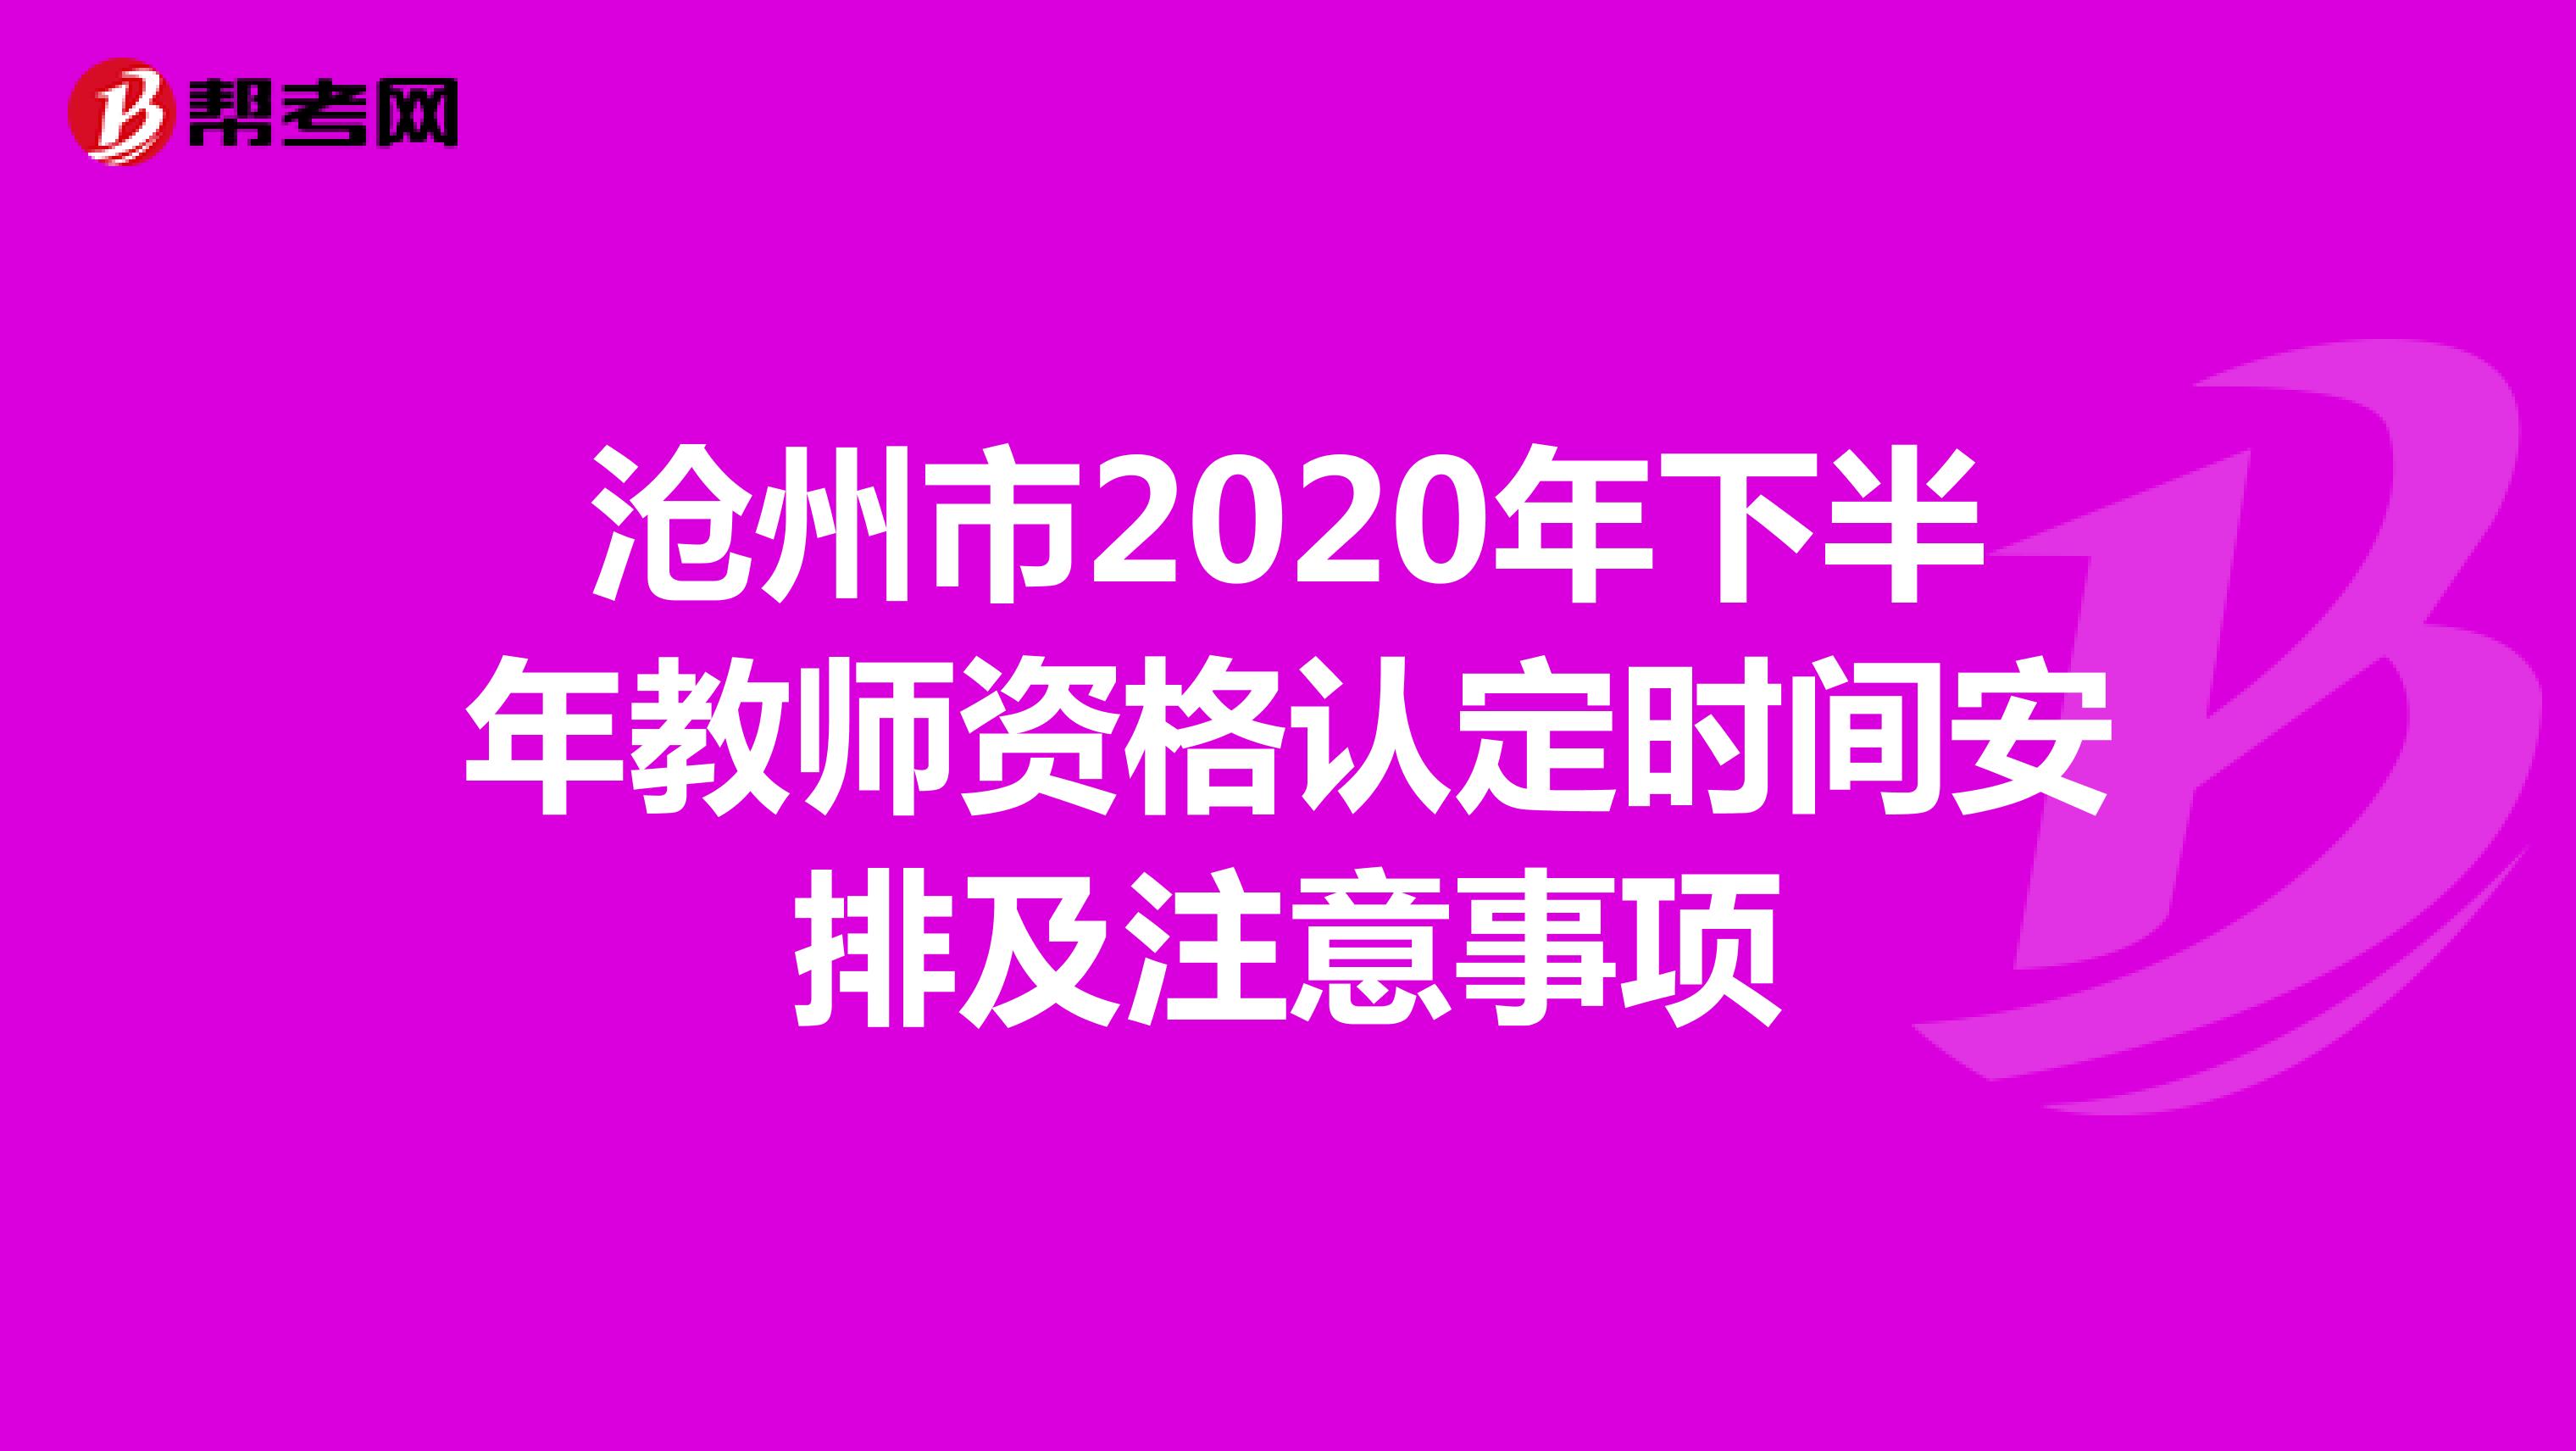 沧州市2020年下半年教师资格认定时间安排及注意事项